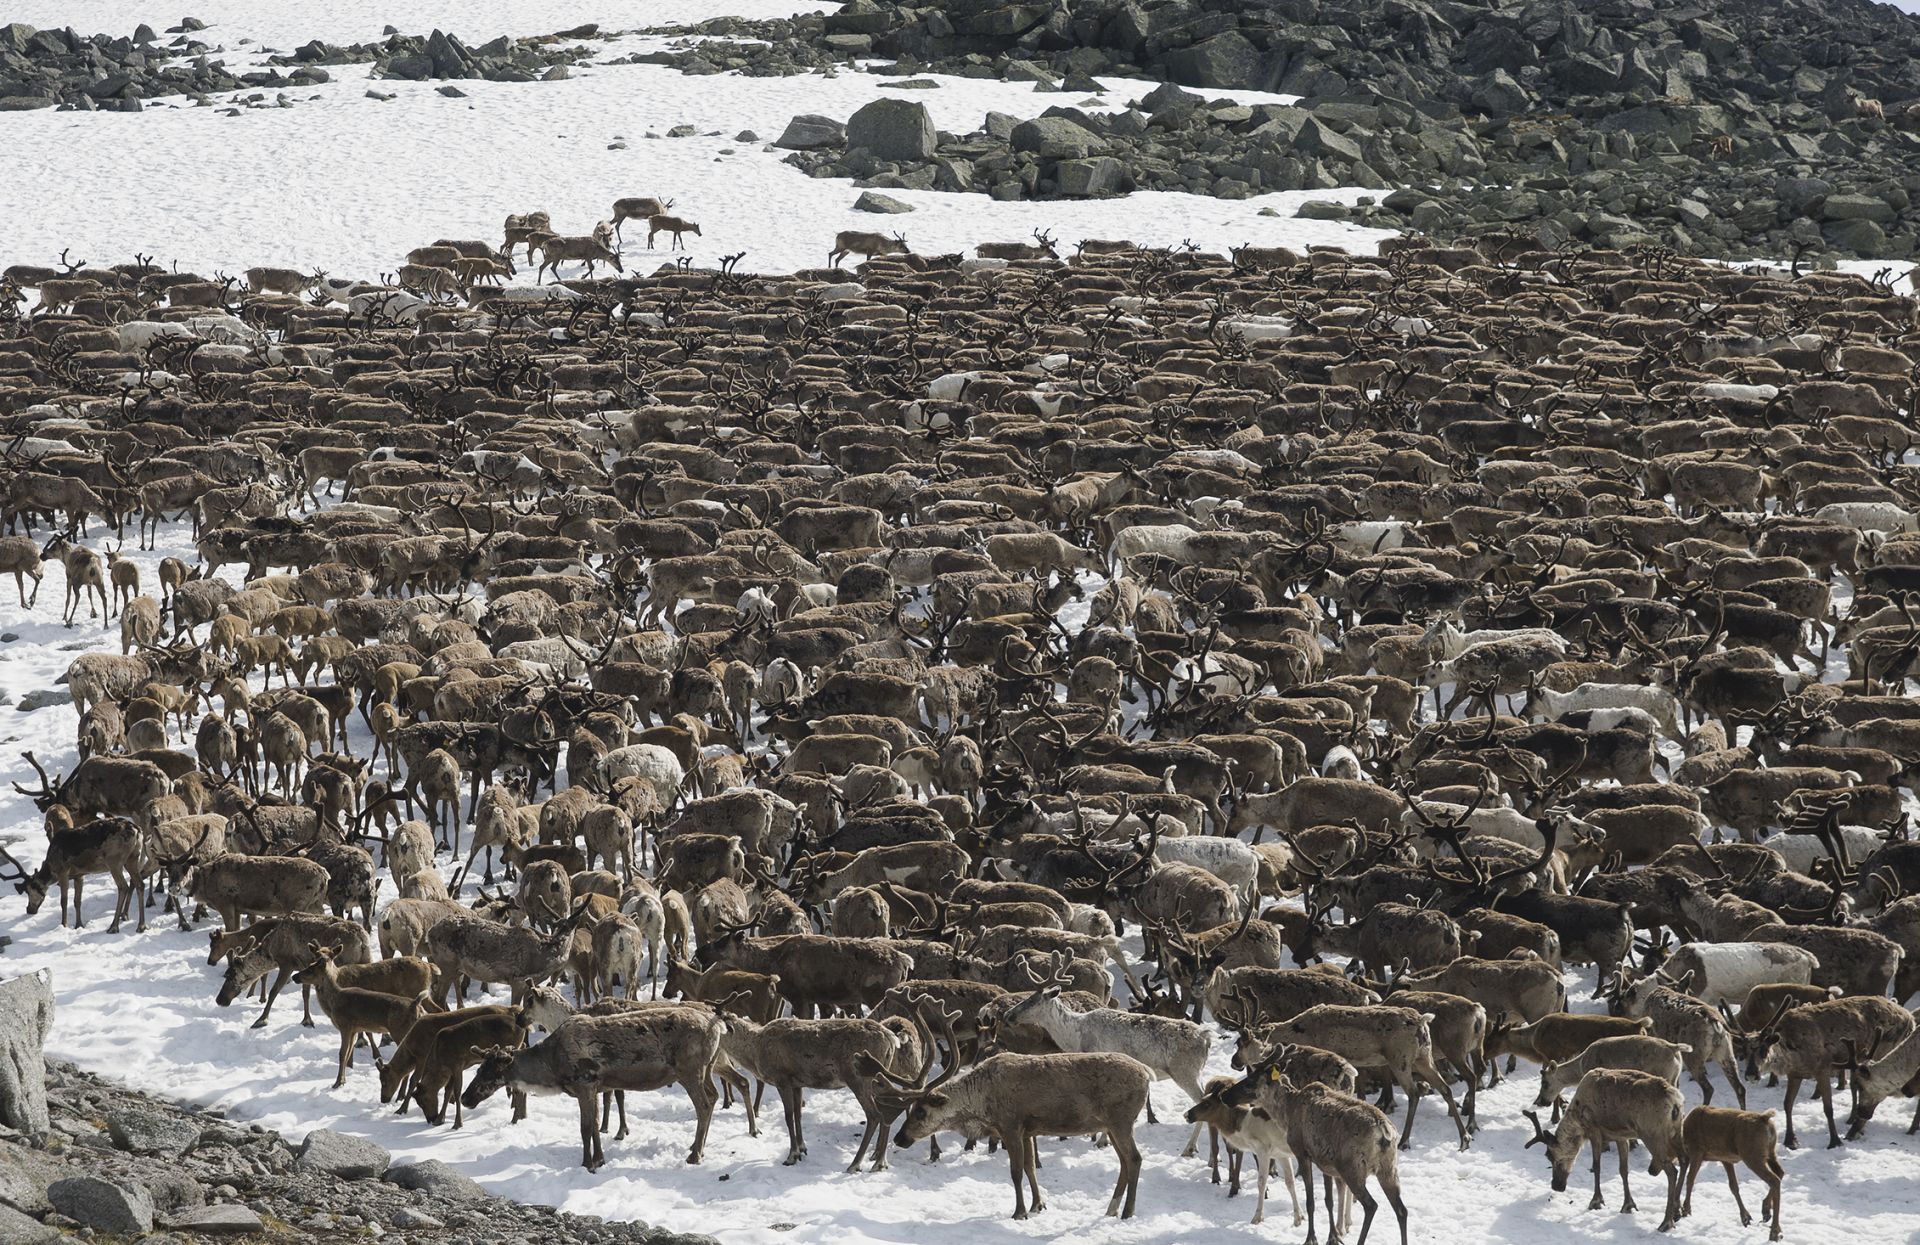 Миграция северных оленей